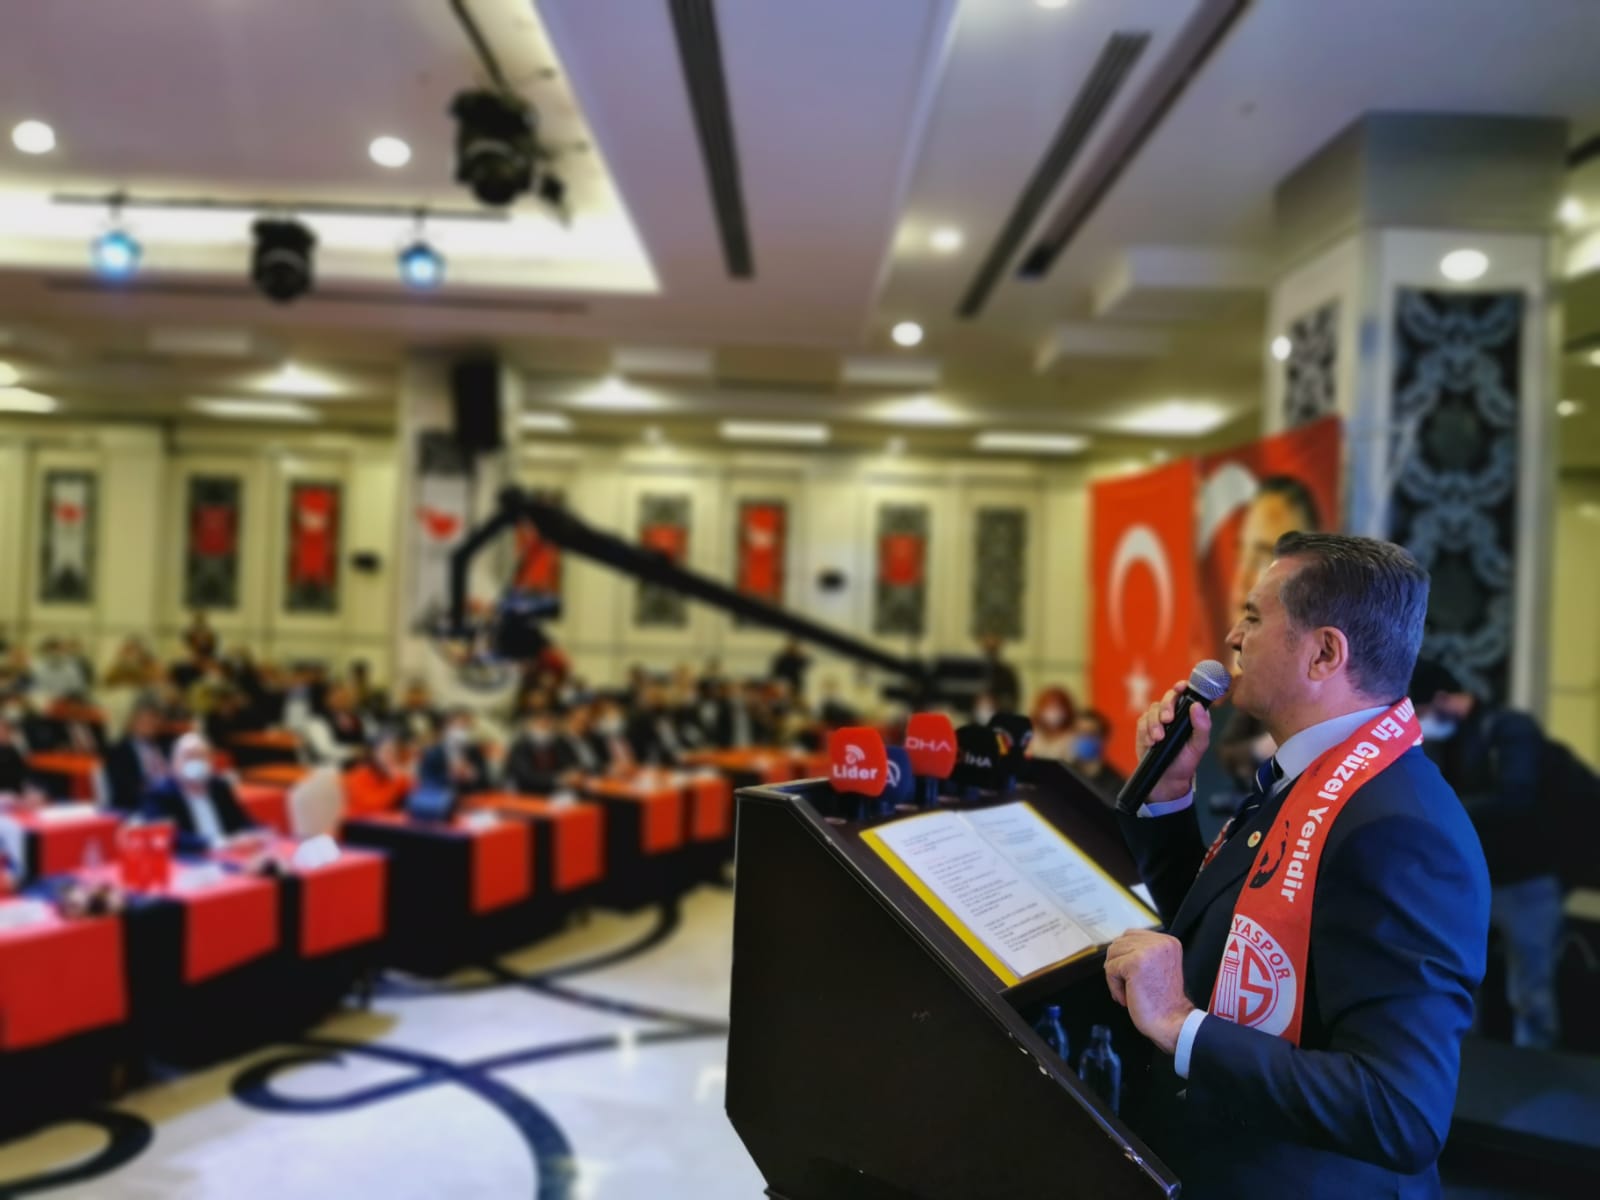 Mustafa Sarıgül: “Önce Muhalefet’in 1. partisi; sonra Ülkemiz’in 1. partisi olacağız! Türkiye’nin gündeminde biz olacağız!”